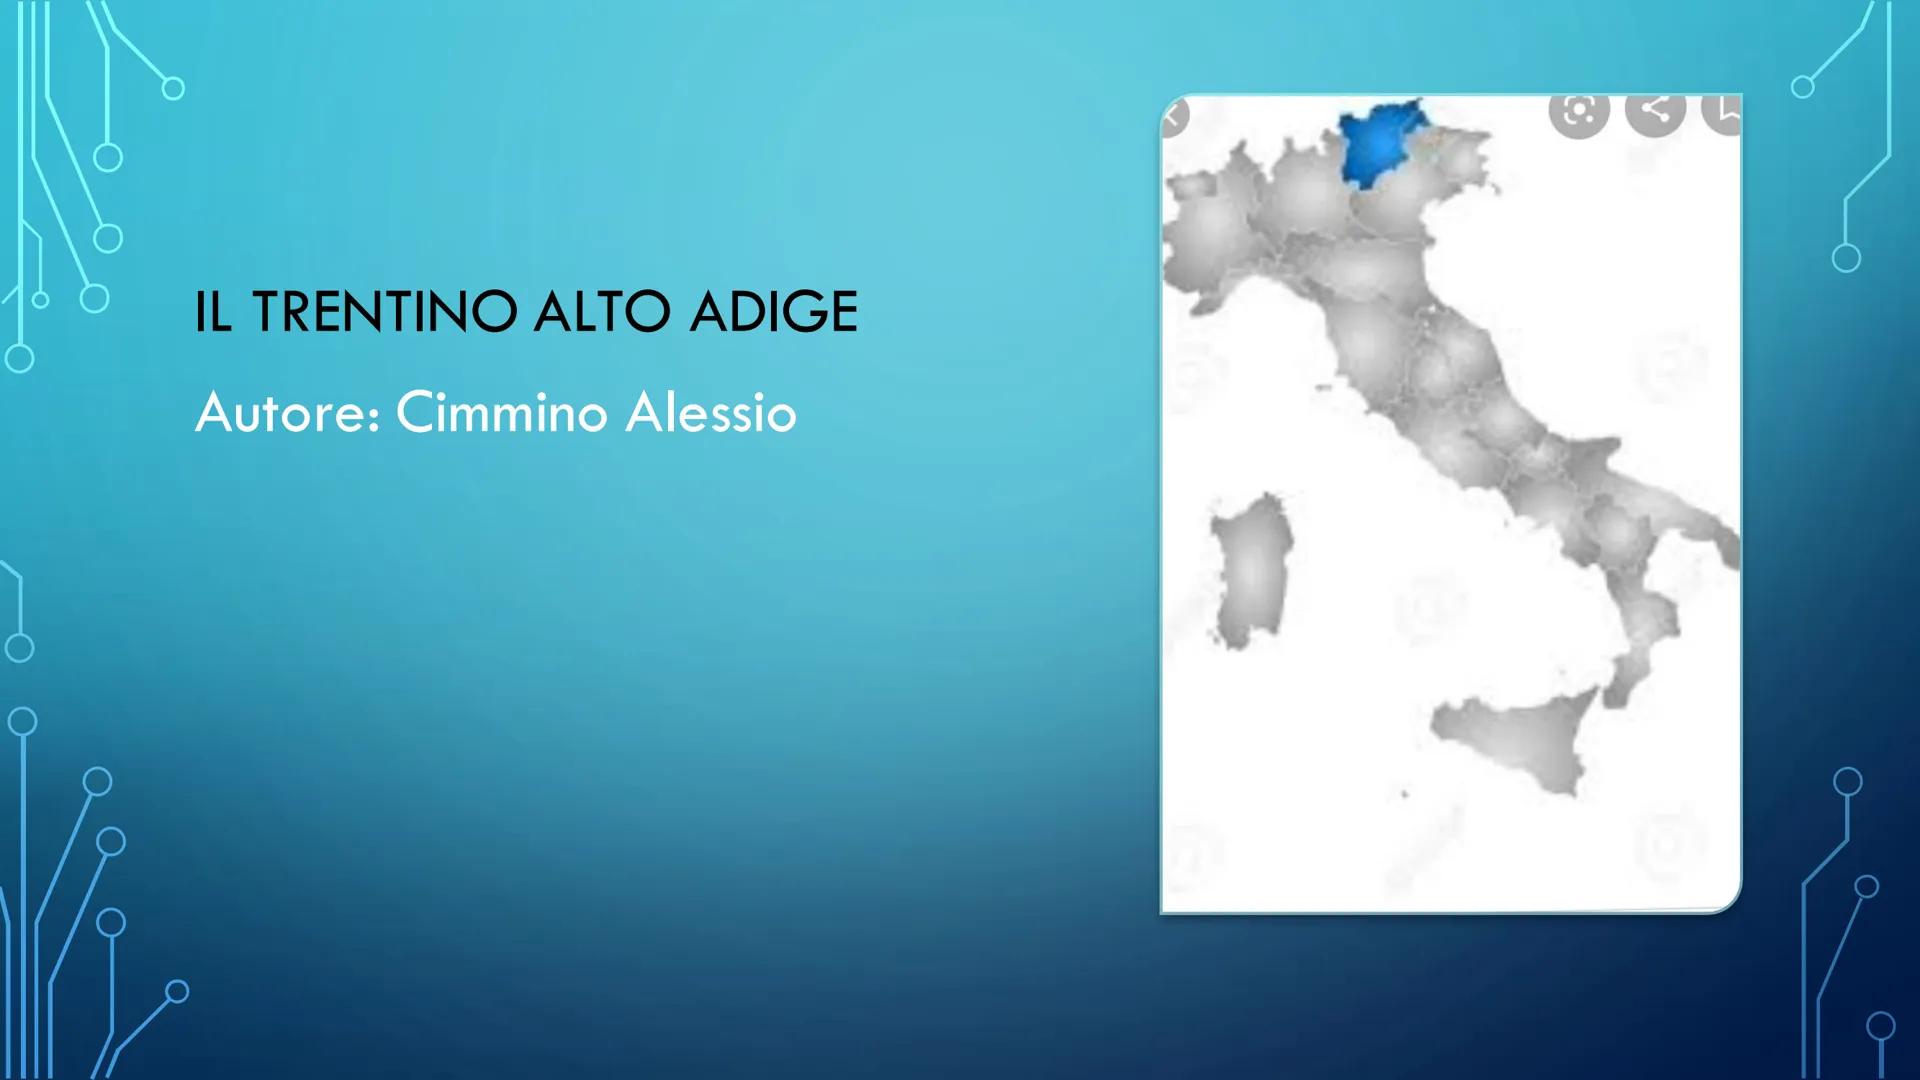 IL TRENTINO ALTO ADIGE
Autore: Cimmino Alessio
V CONFINI:
Il Trentino Alto Adige è una regione dell' Italia
nord orientale confina:a nord co